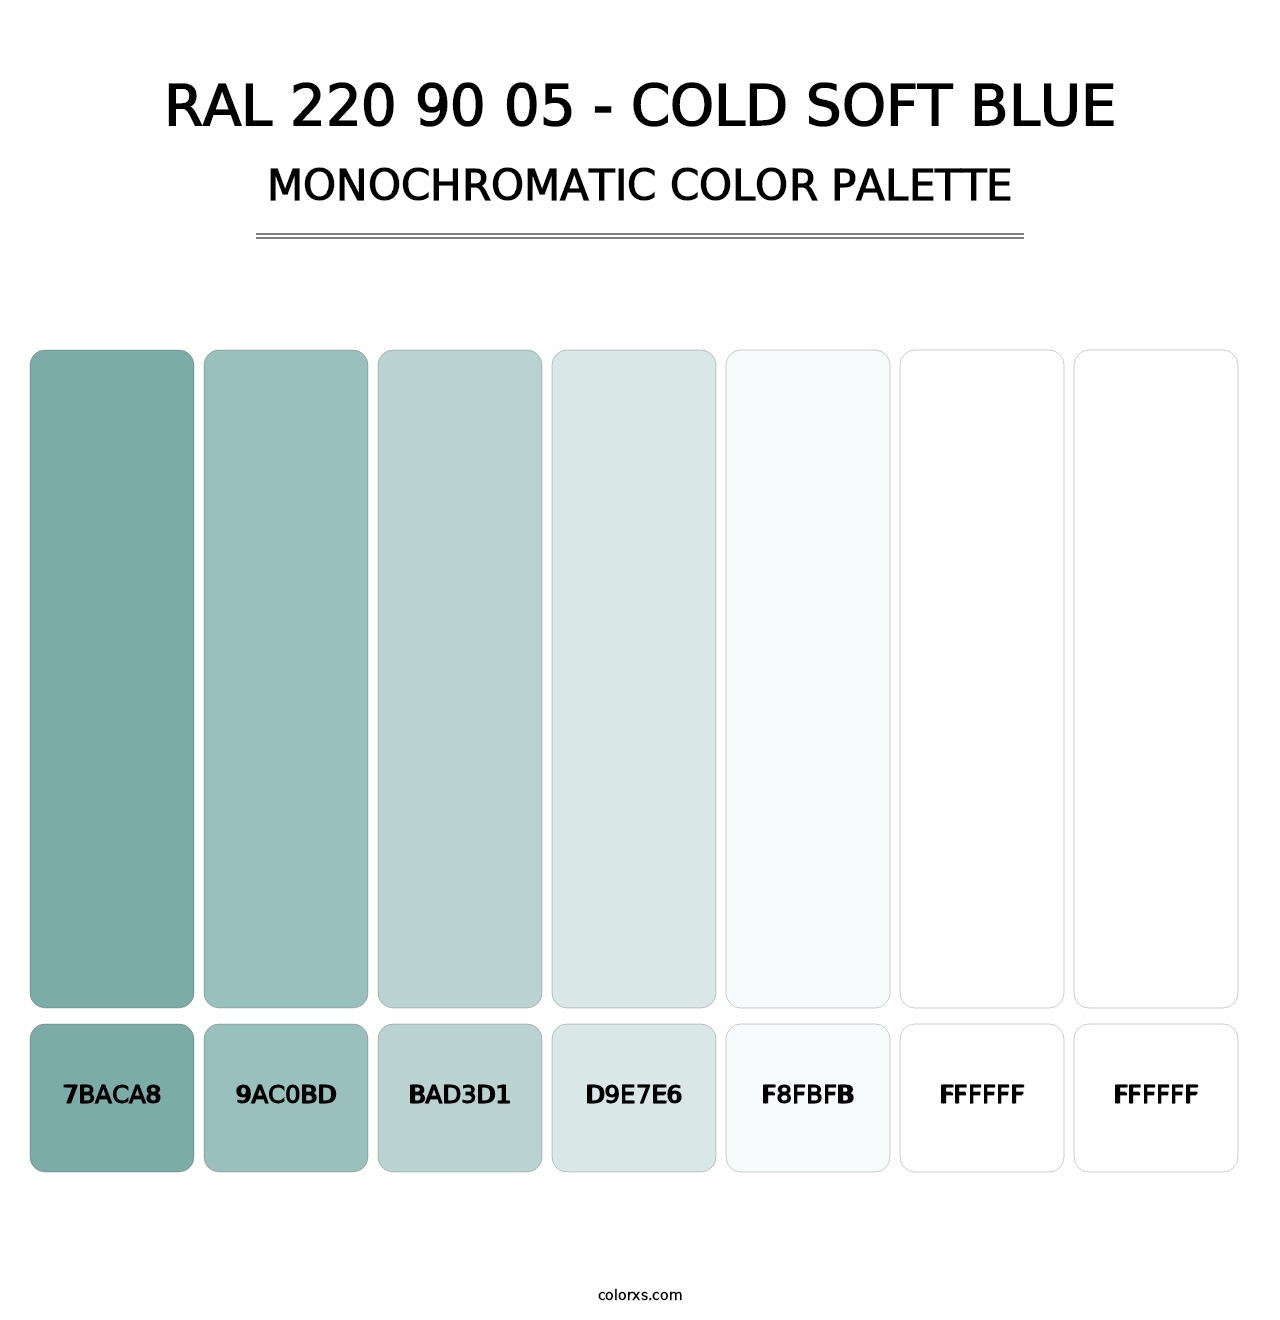 RAL 220 90 05 - Cold Soft Blue - Monochromatic Color Palette